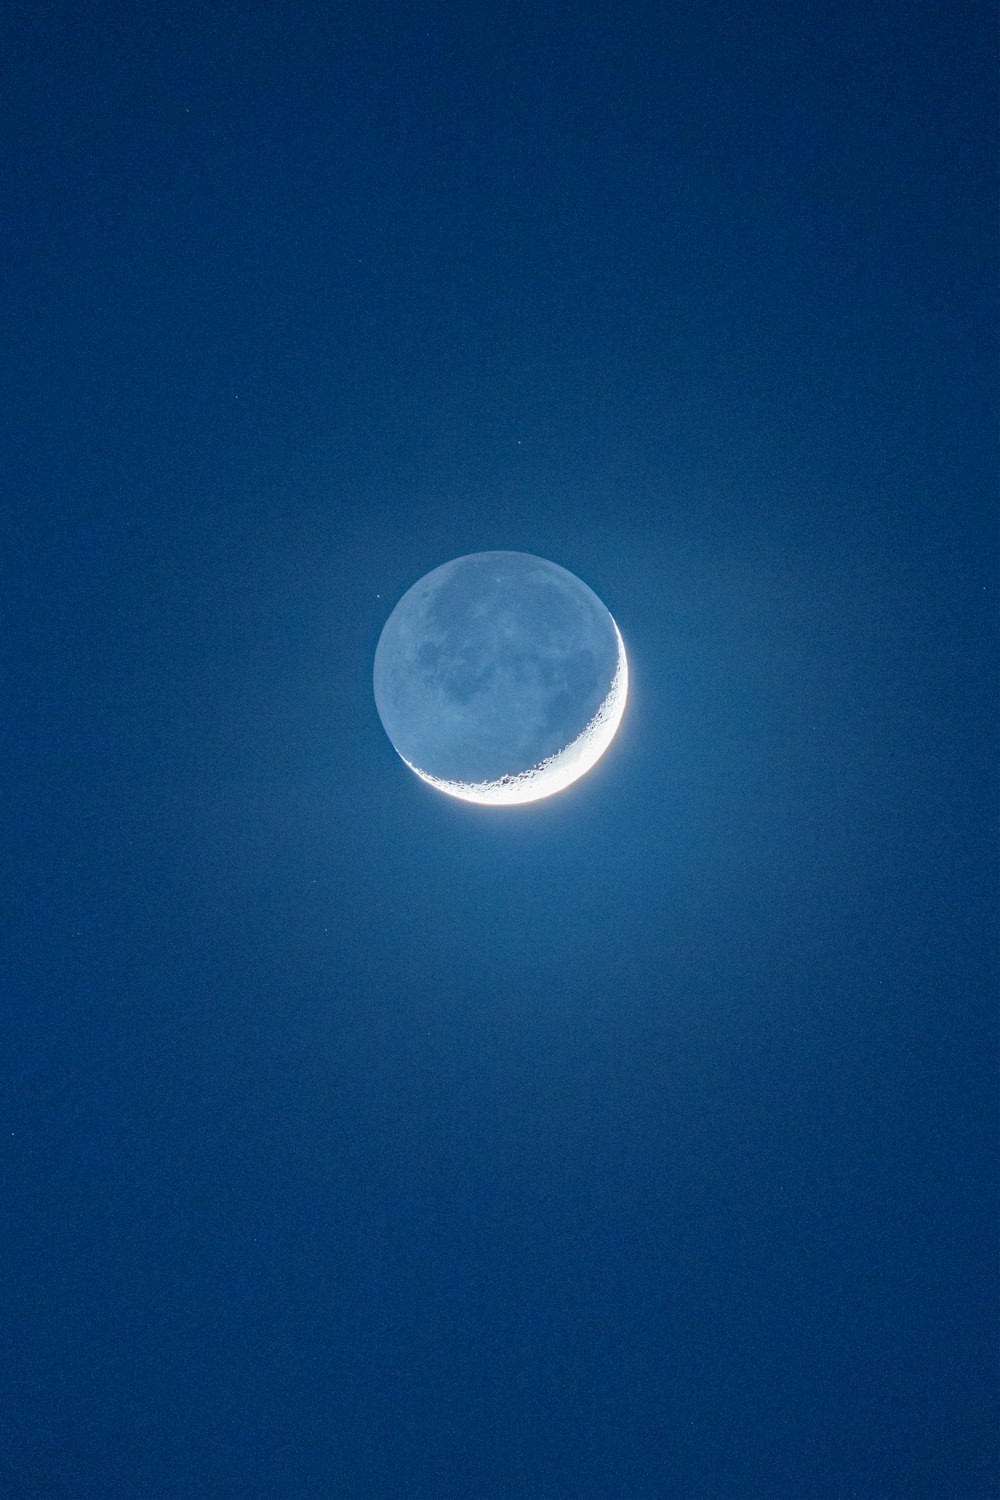 full moon on blue sky